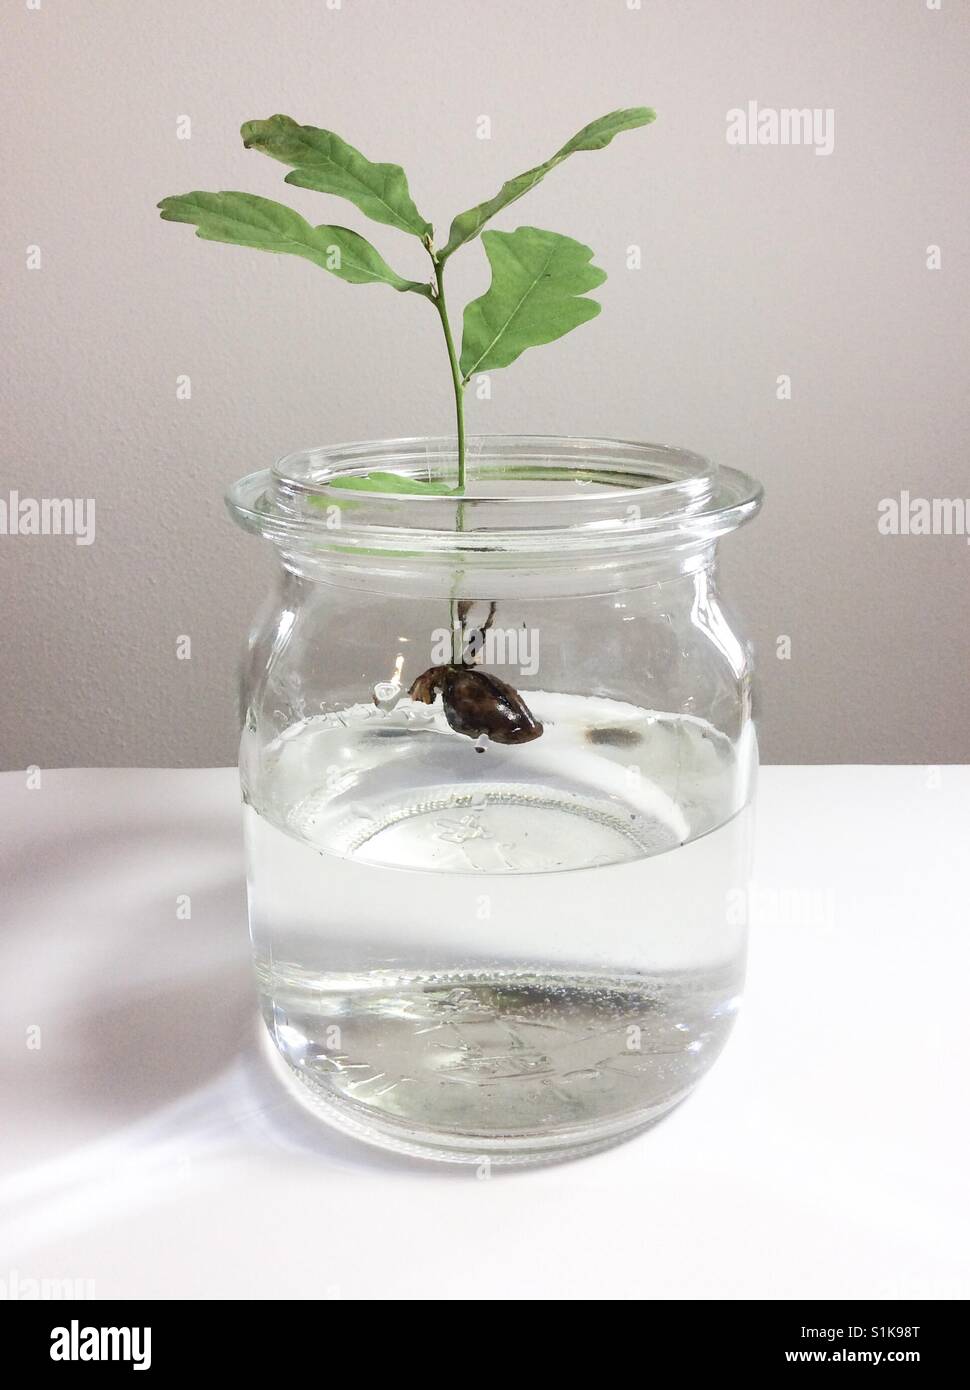 Eichel und kleinen Eiche schwimmt auf Wasser im Glas Stockfotografie - Alamy